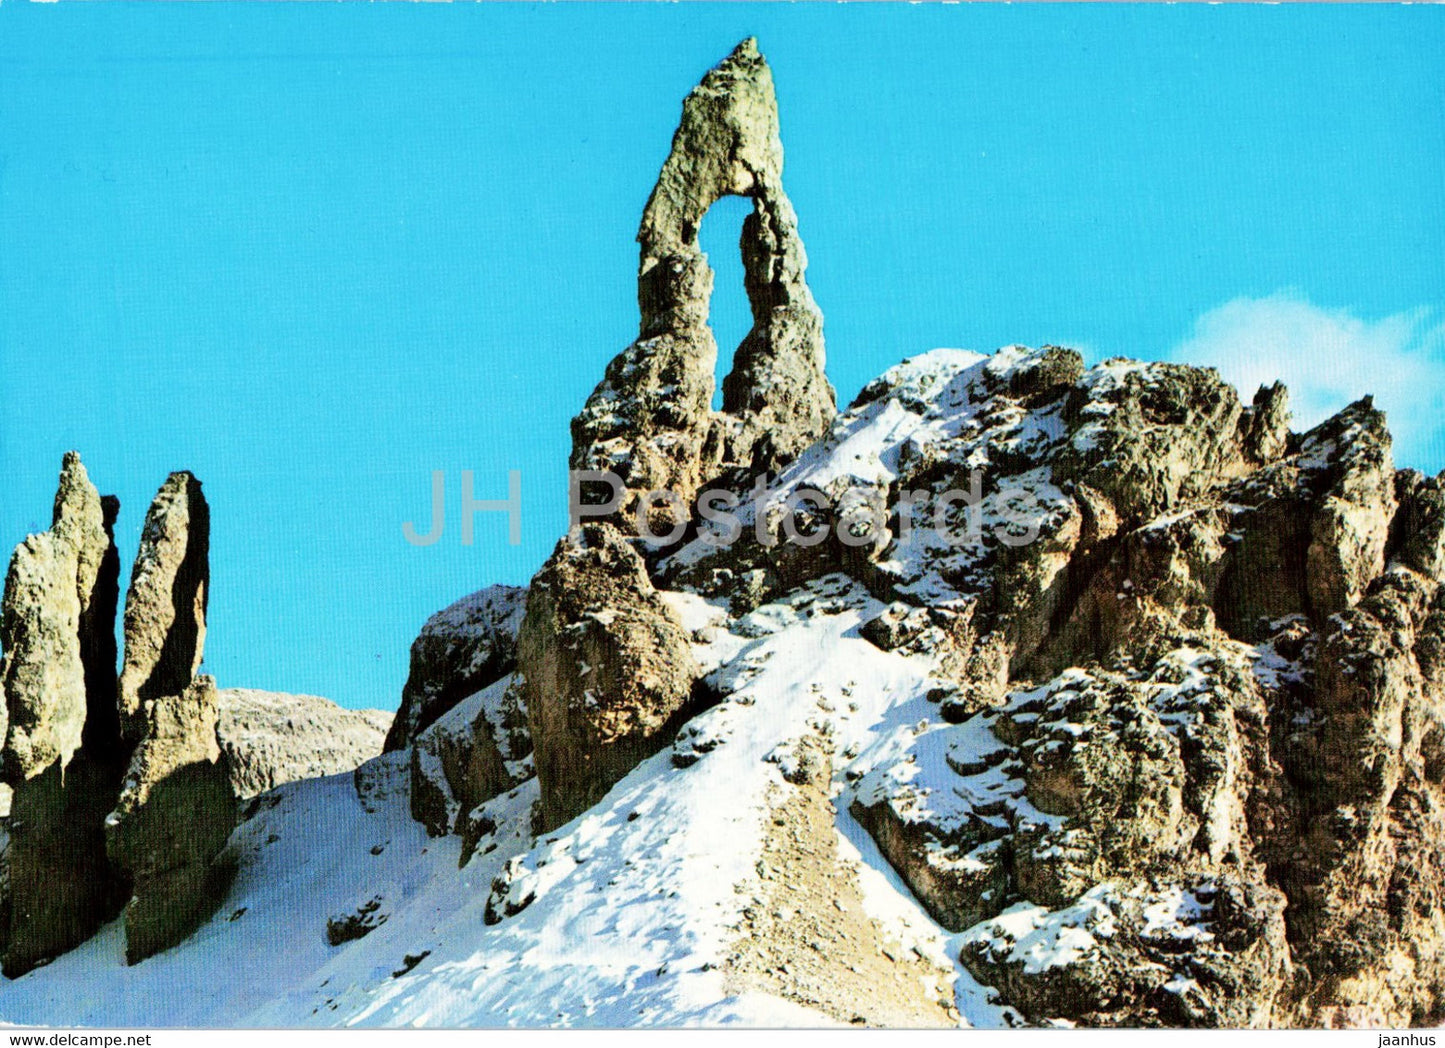 Gruppo del Catinaccio - Dolomiti - Motivo Presso il Passo Principe - Italy - unused - JH Postcards